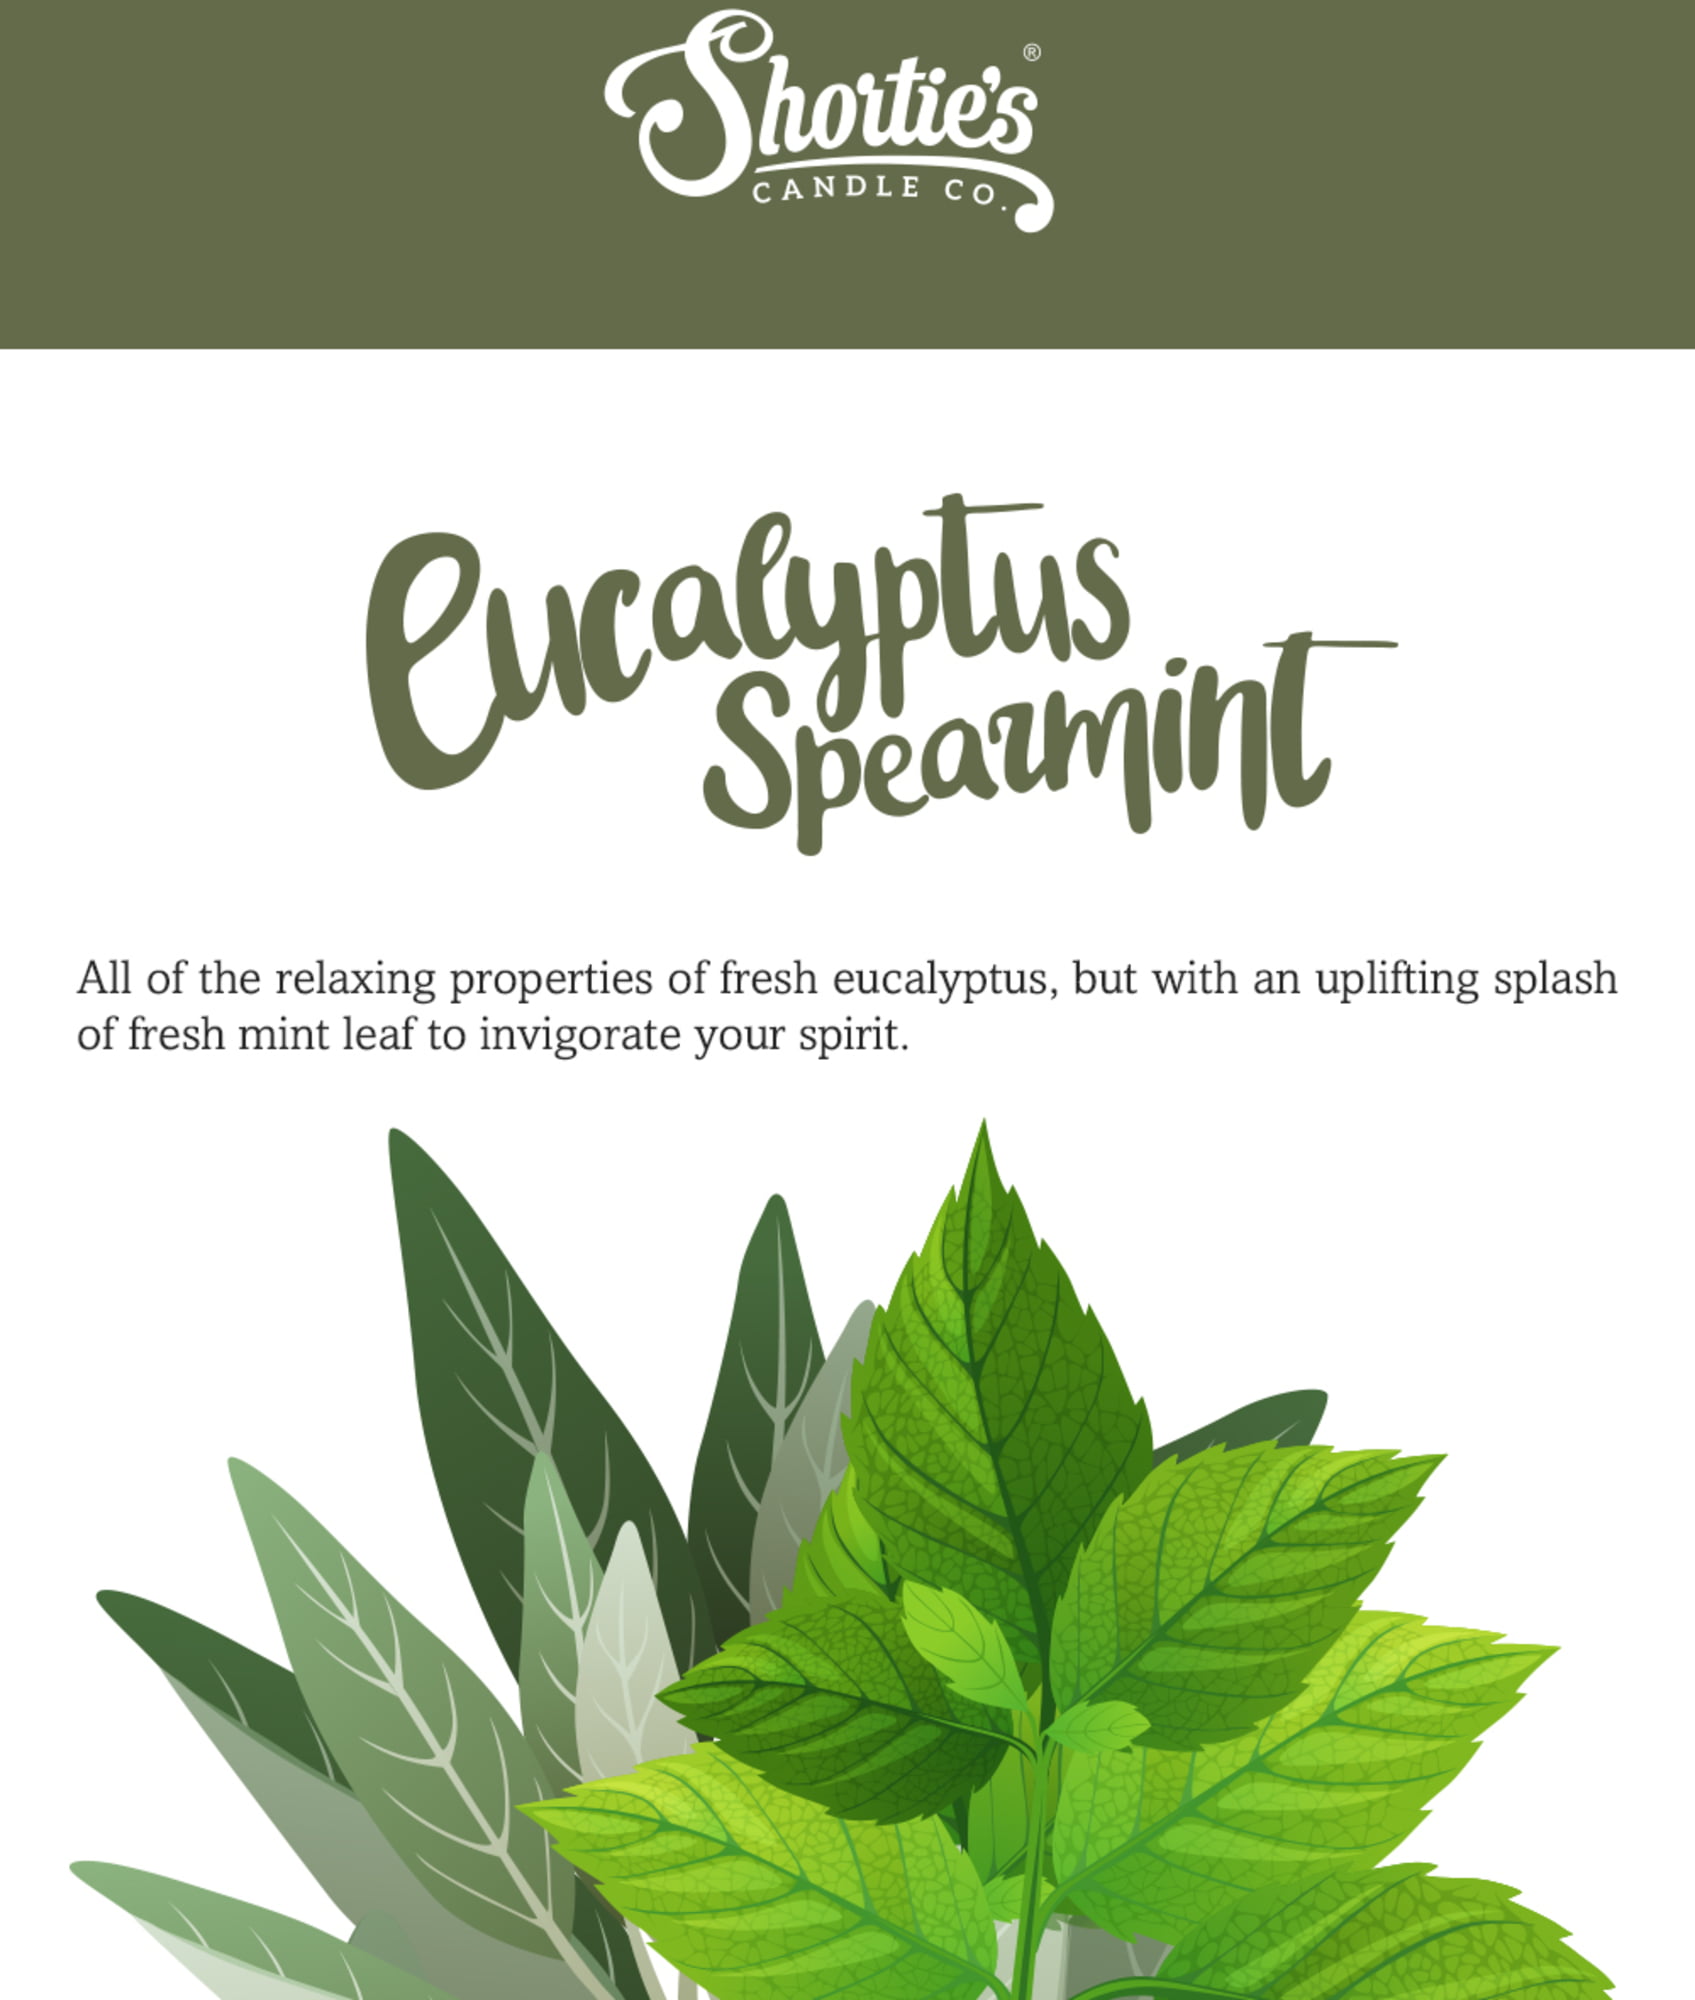 Peppermint & Eucalyptus Wax Melts